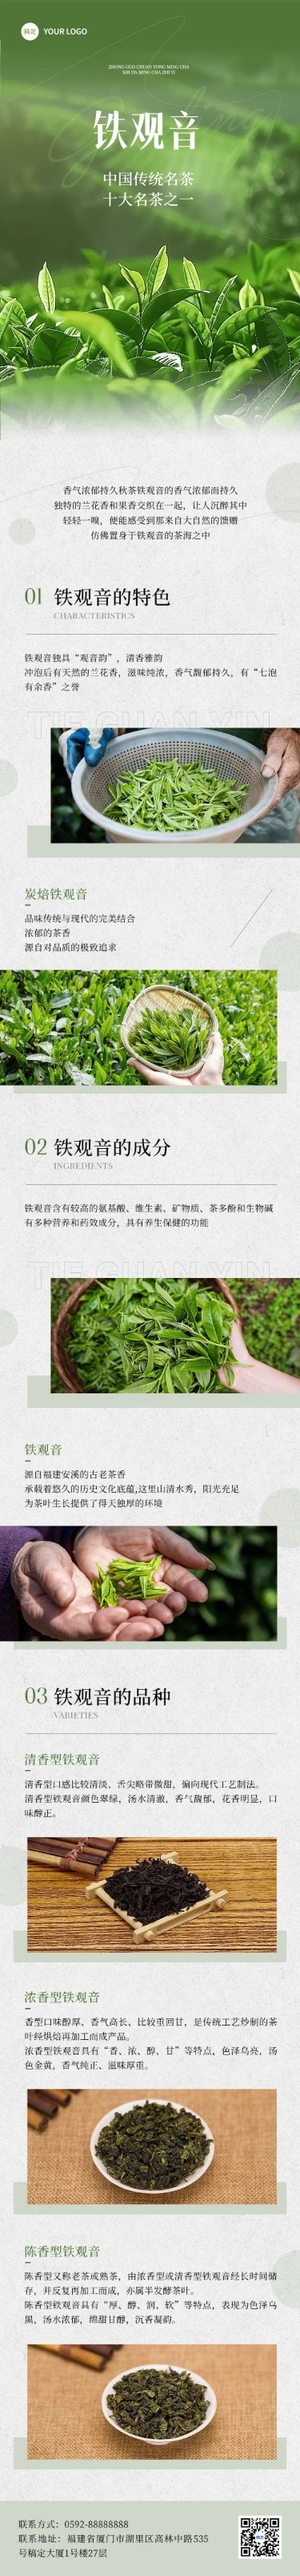 茶叶营销卖货微信公众号文章长图